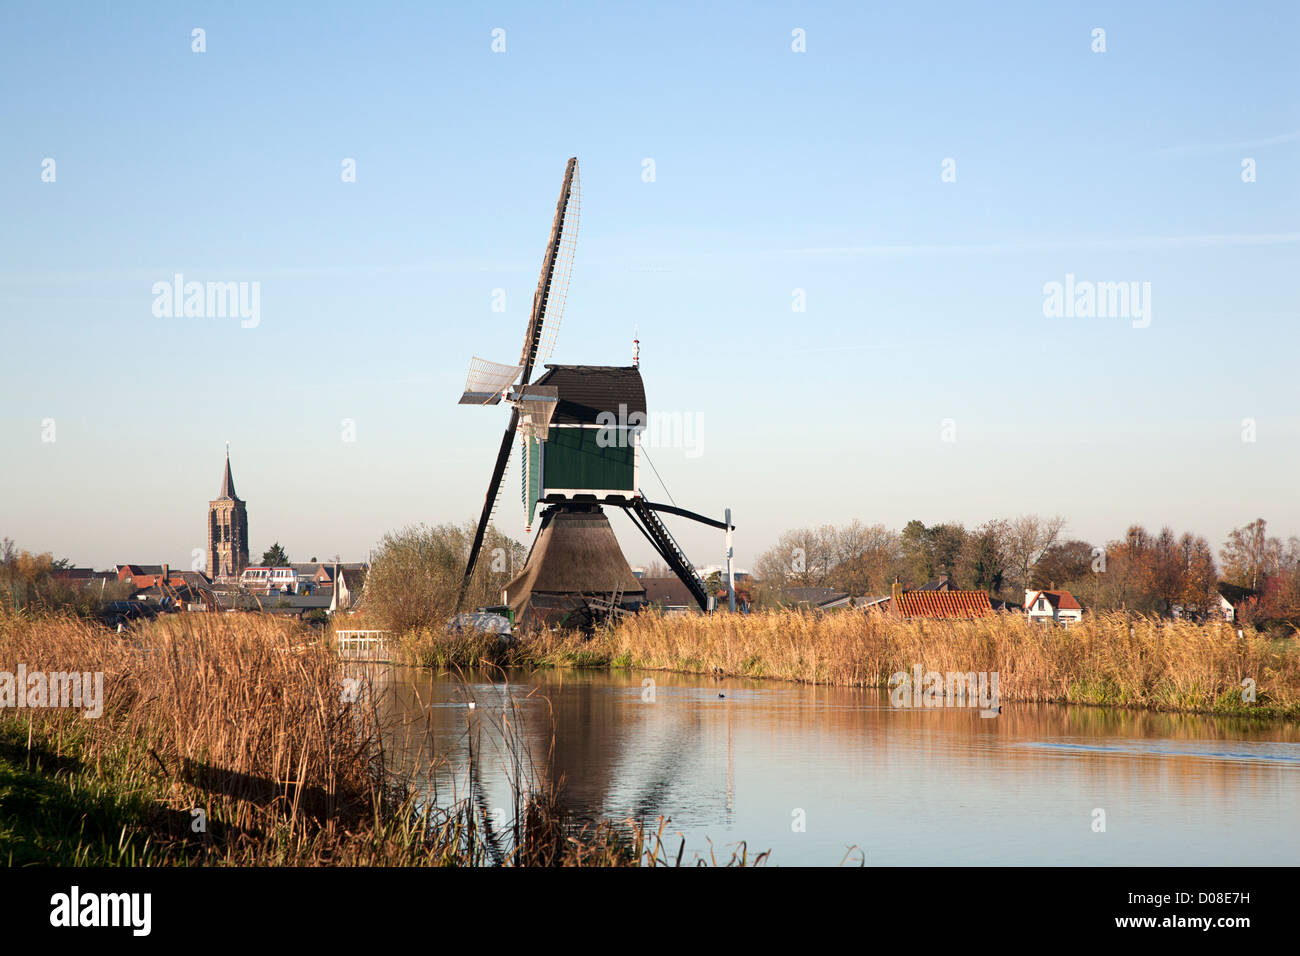 Windmühle benannt "Gelkenes Molen" Groot Ammers, Süd-Holland, Niederlande Stockfoto